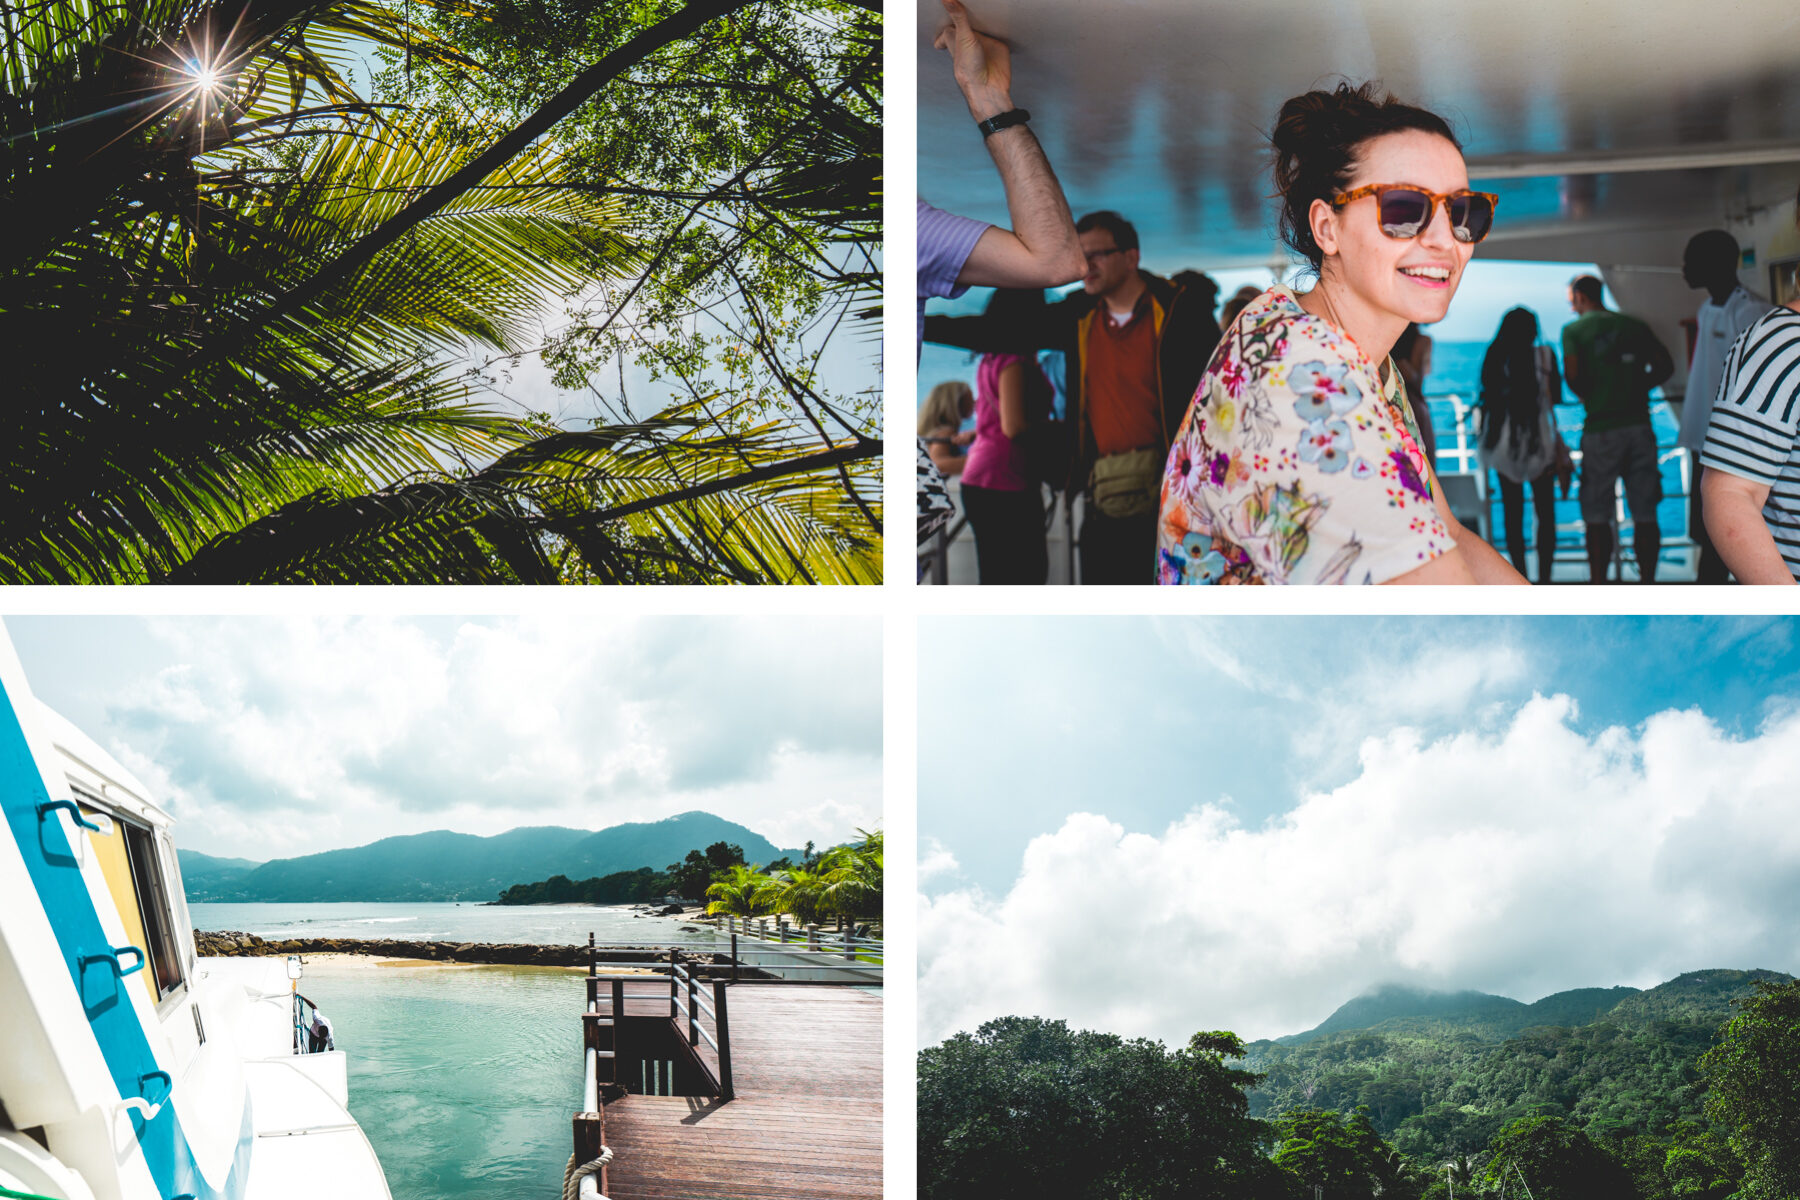 freiseindesign-outdoorblog-seychellen-direktflug-collage-26-3732020